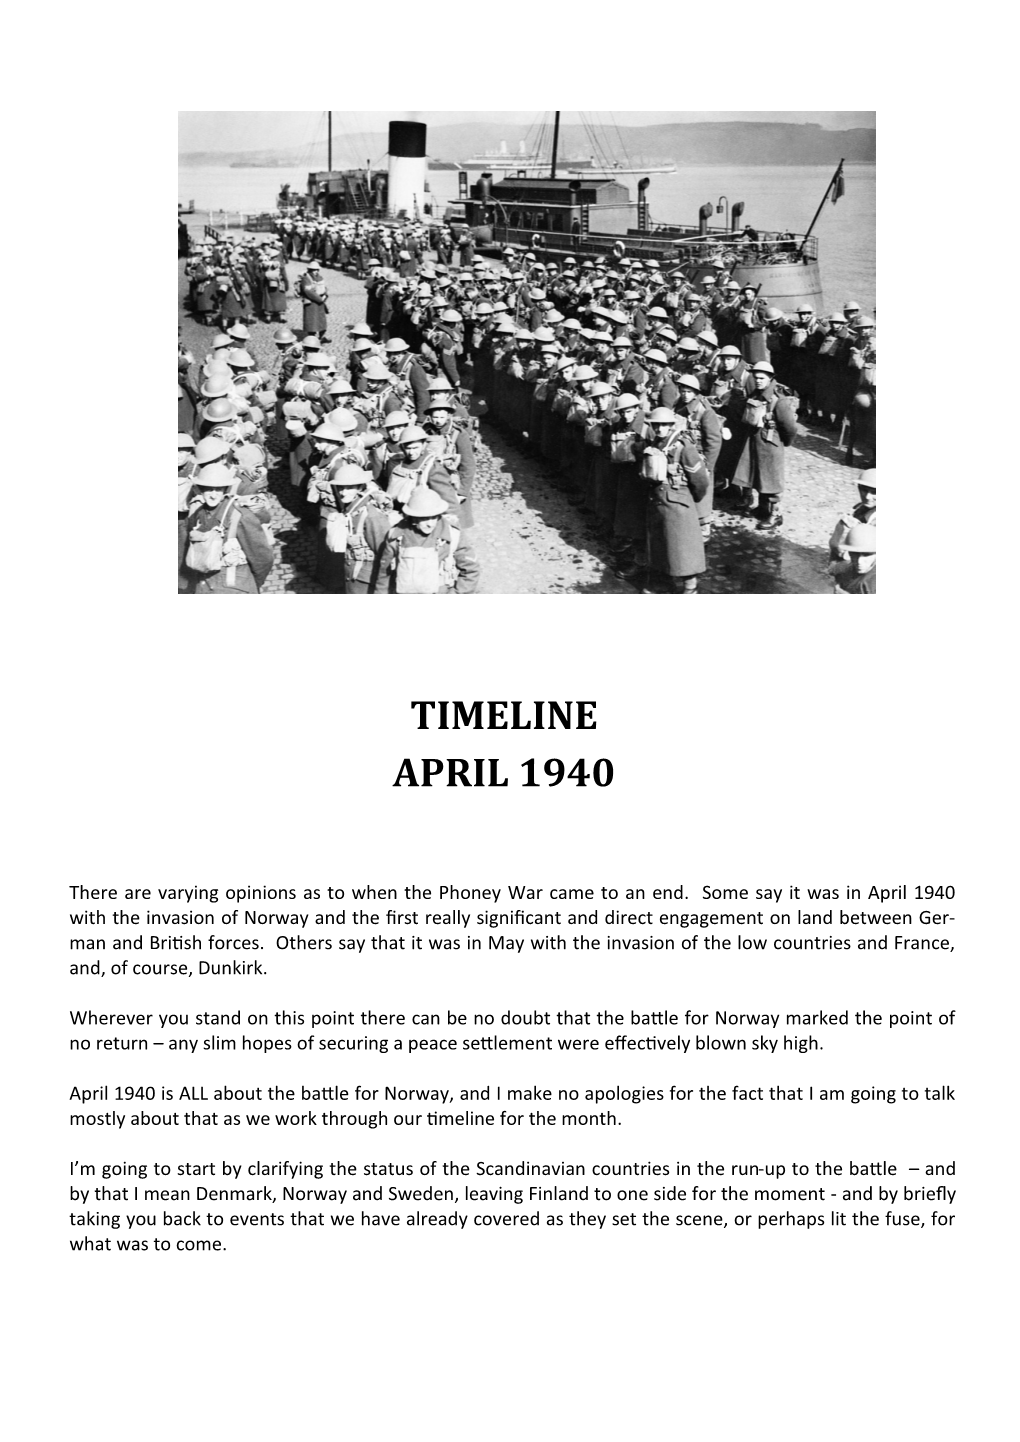 Timeline April 1940